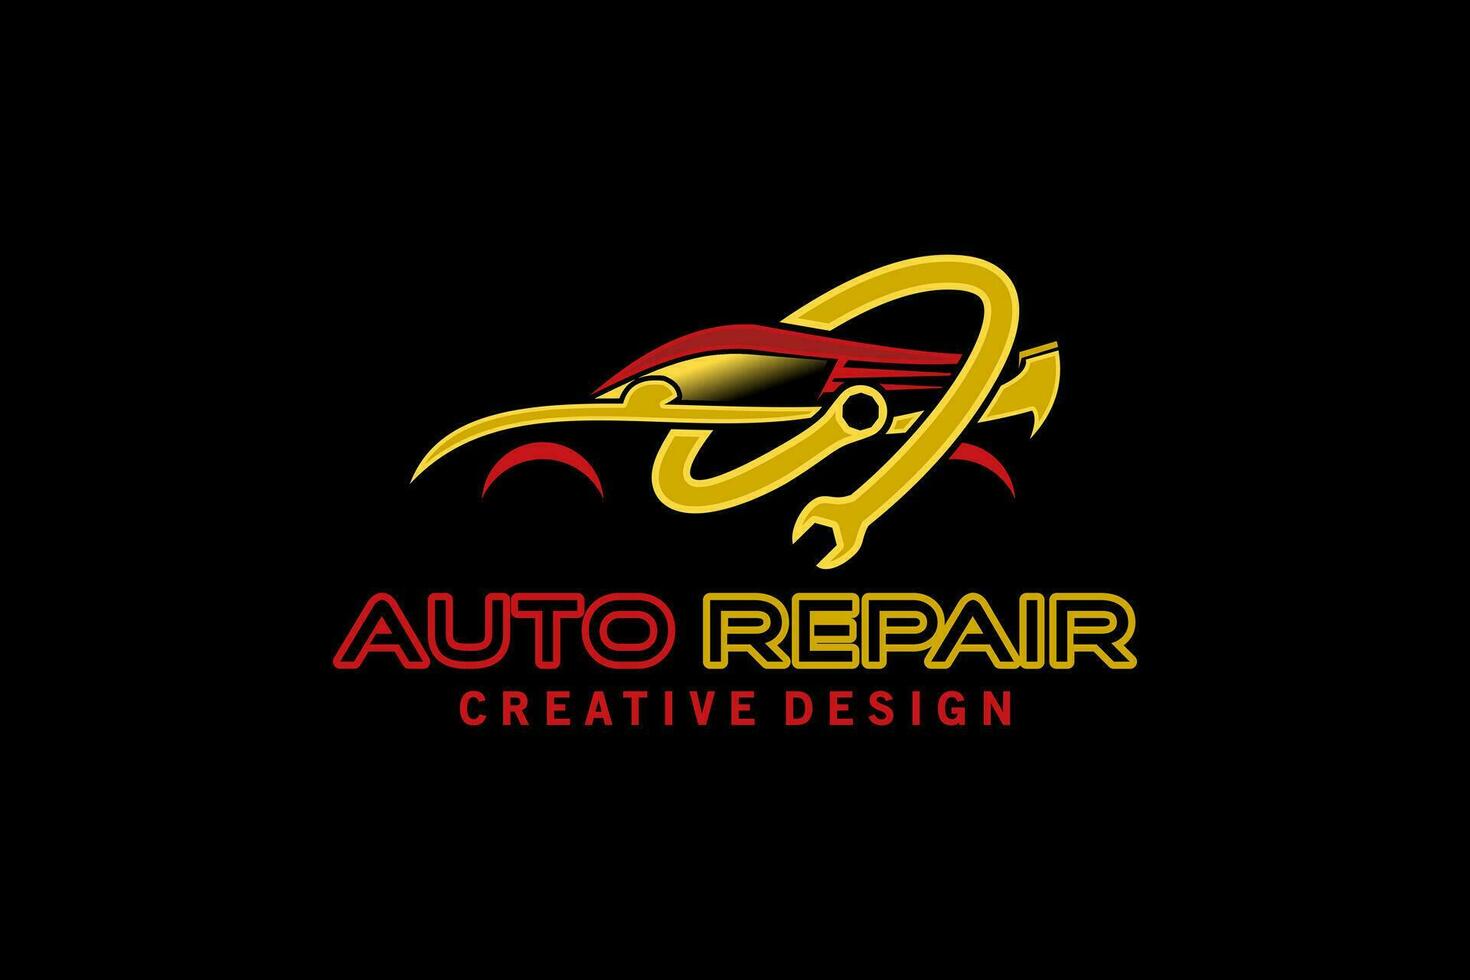 Auto repair logo design, modern sports car repair service logo vector